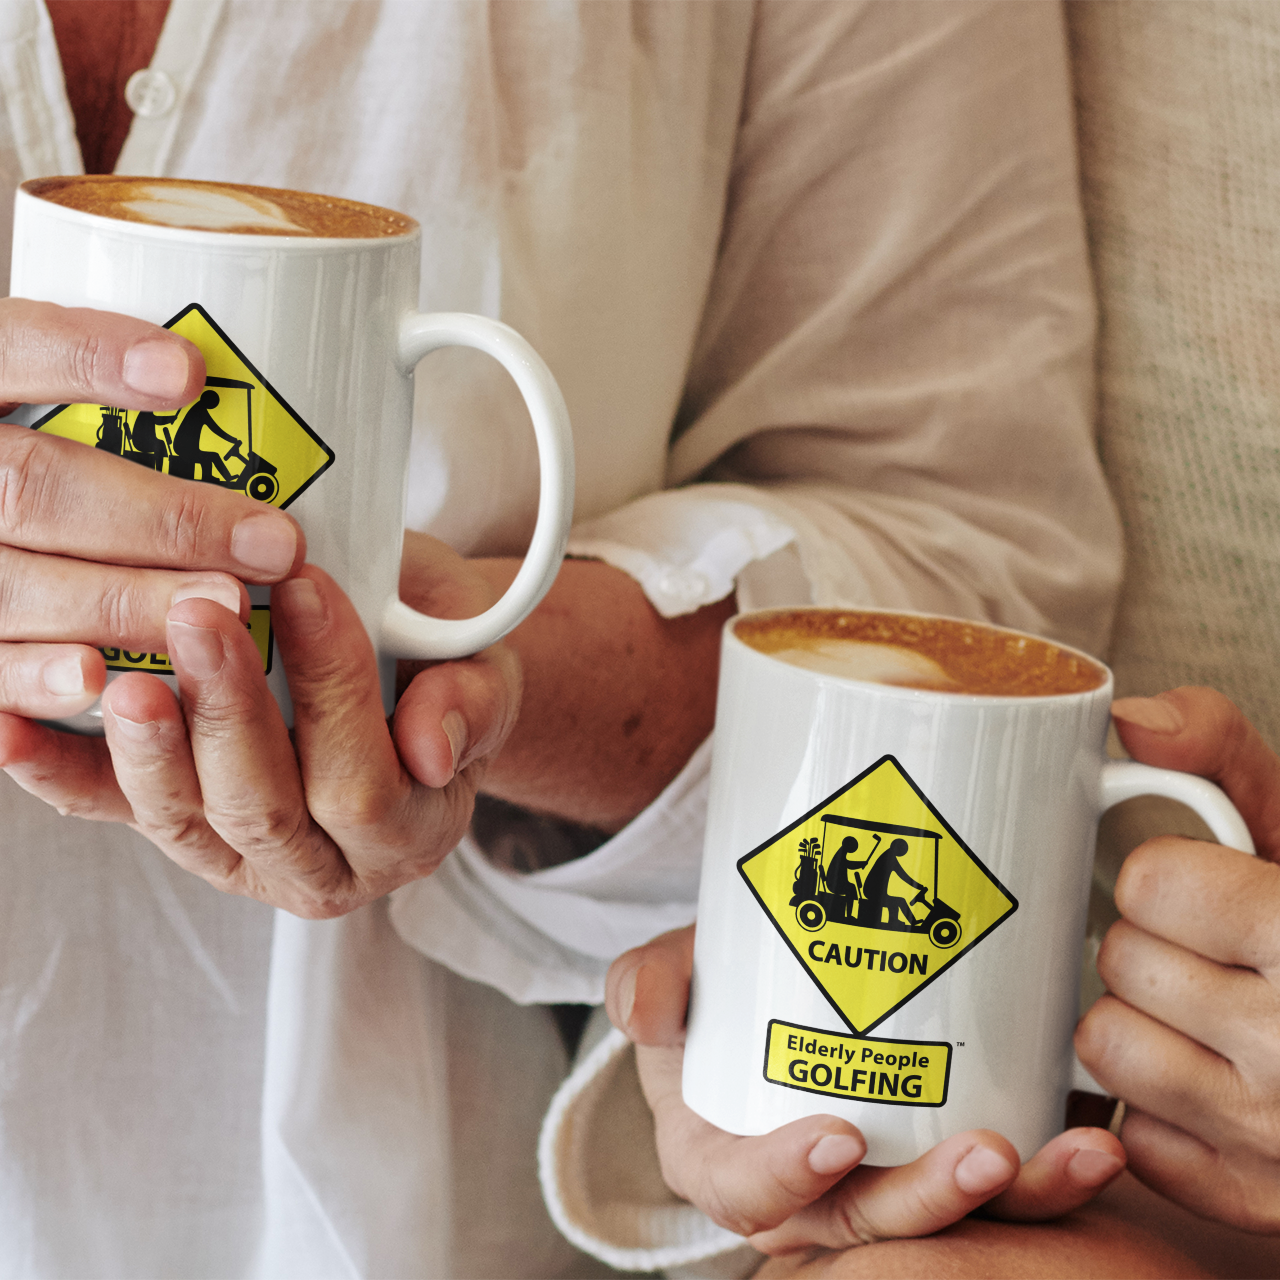 CAUTION: Elderly People GOLFING Coffee Mugs